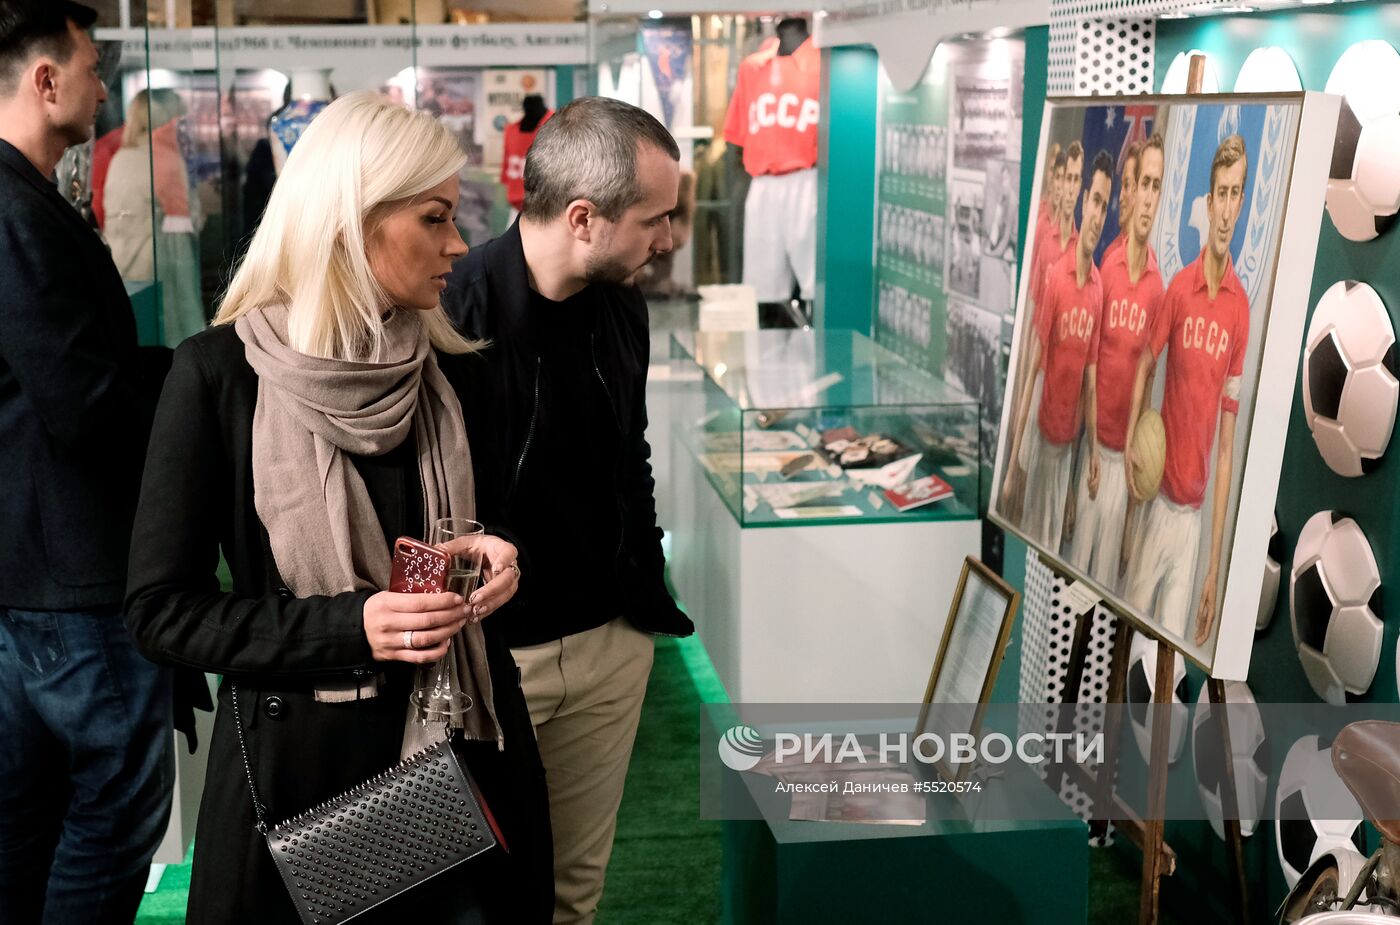 Открытие выставки «История отечественного футбола» в Санкт-Петербурге